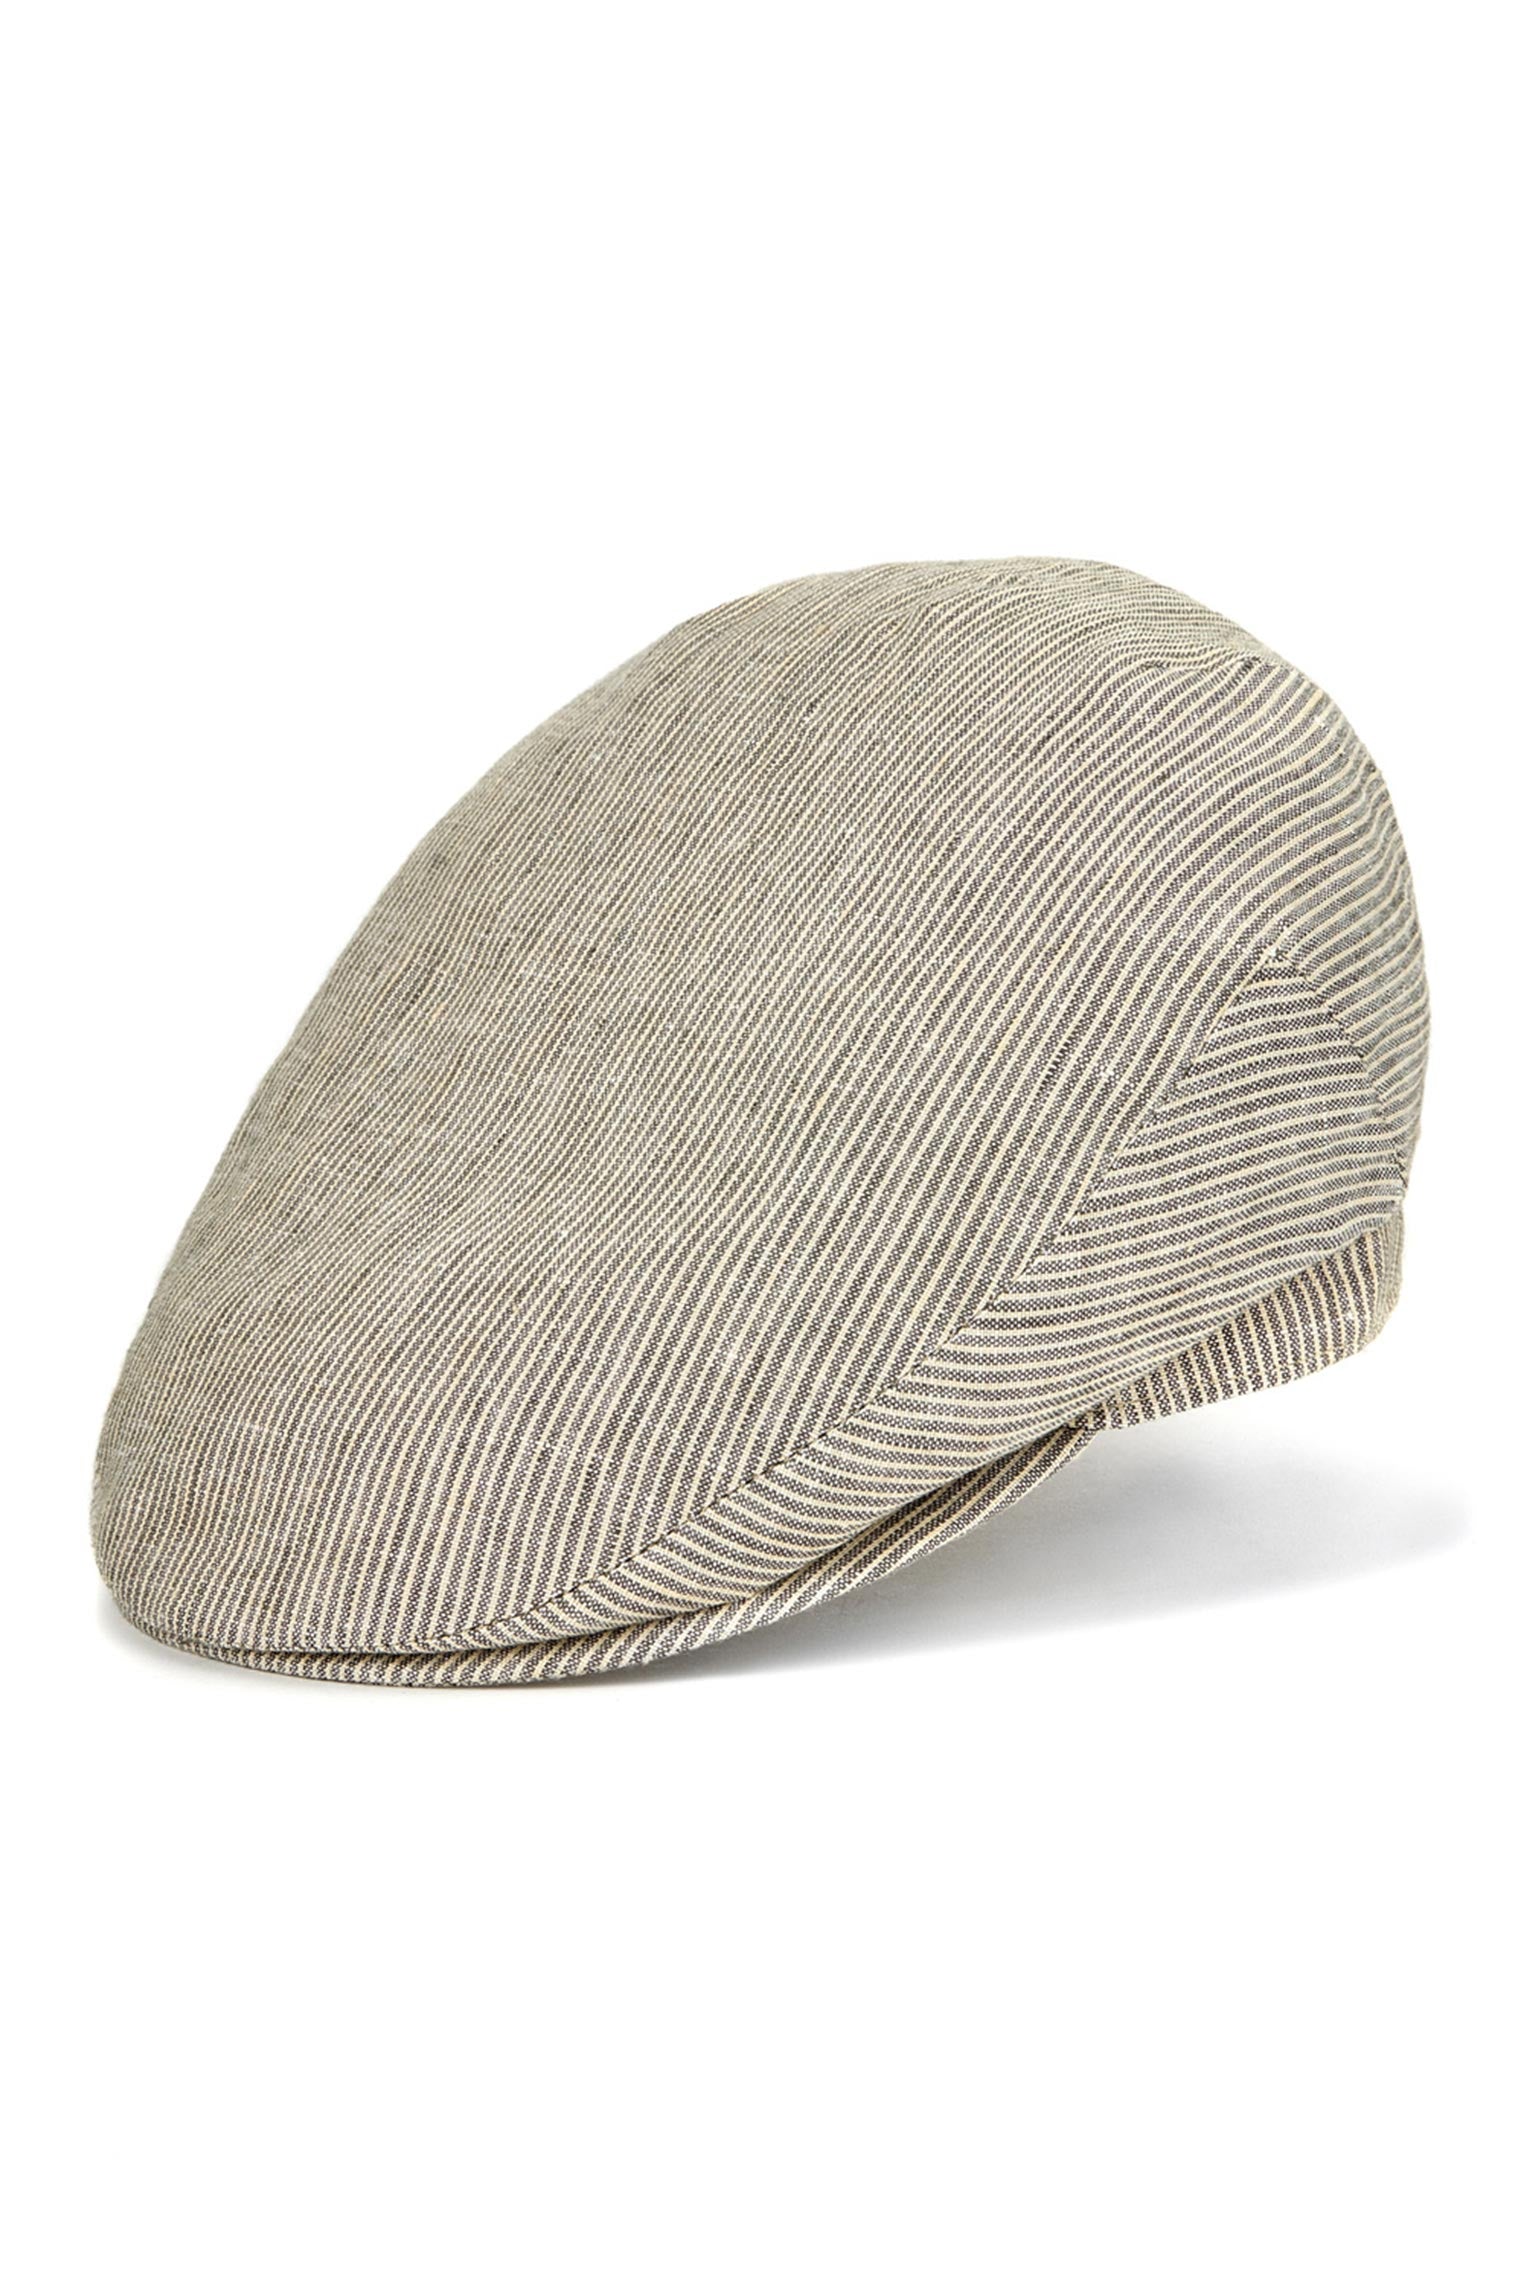 Cannes Linen Flat Cap - Best Selling Hats - Lock & Co. Hatters London UK